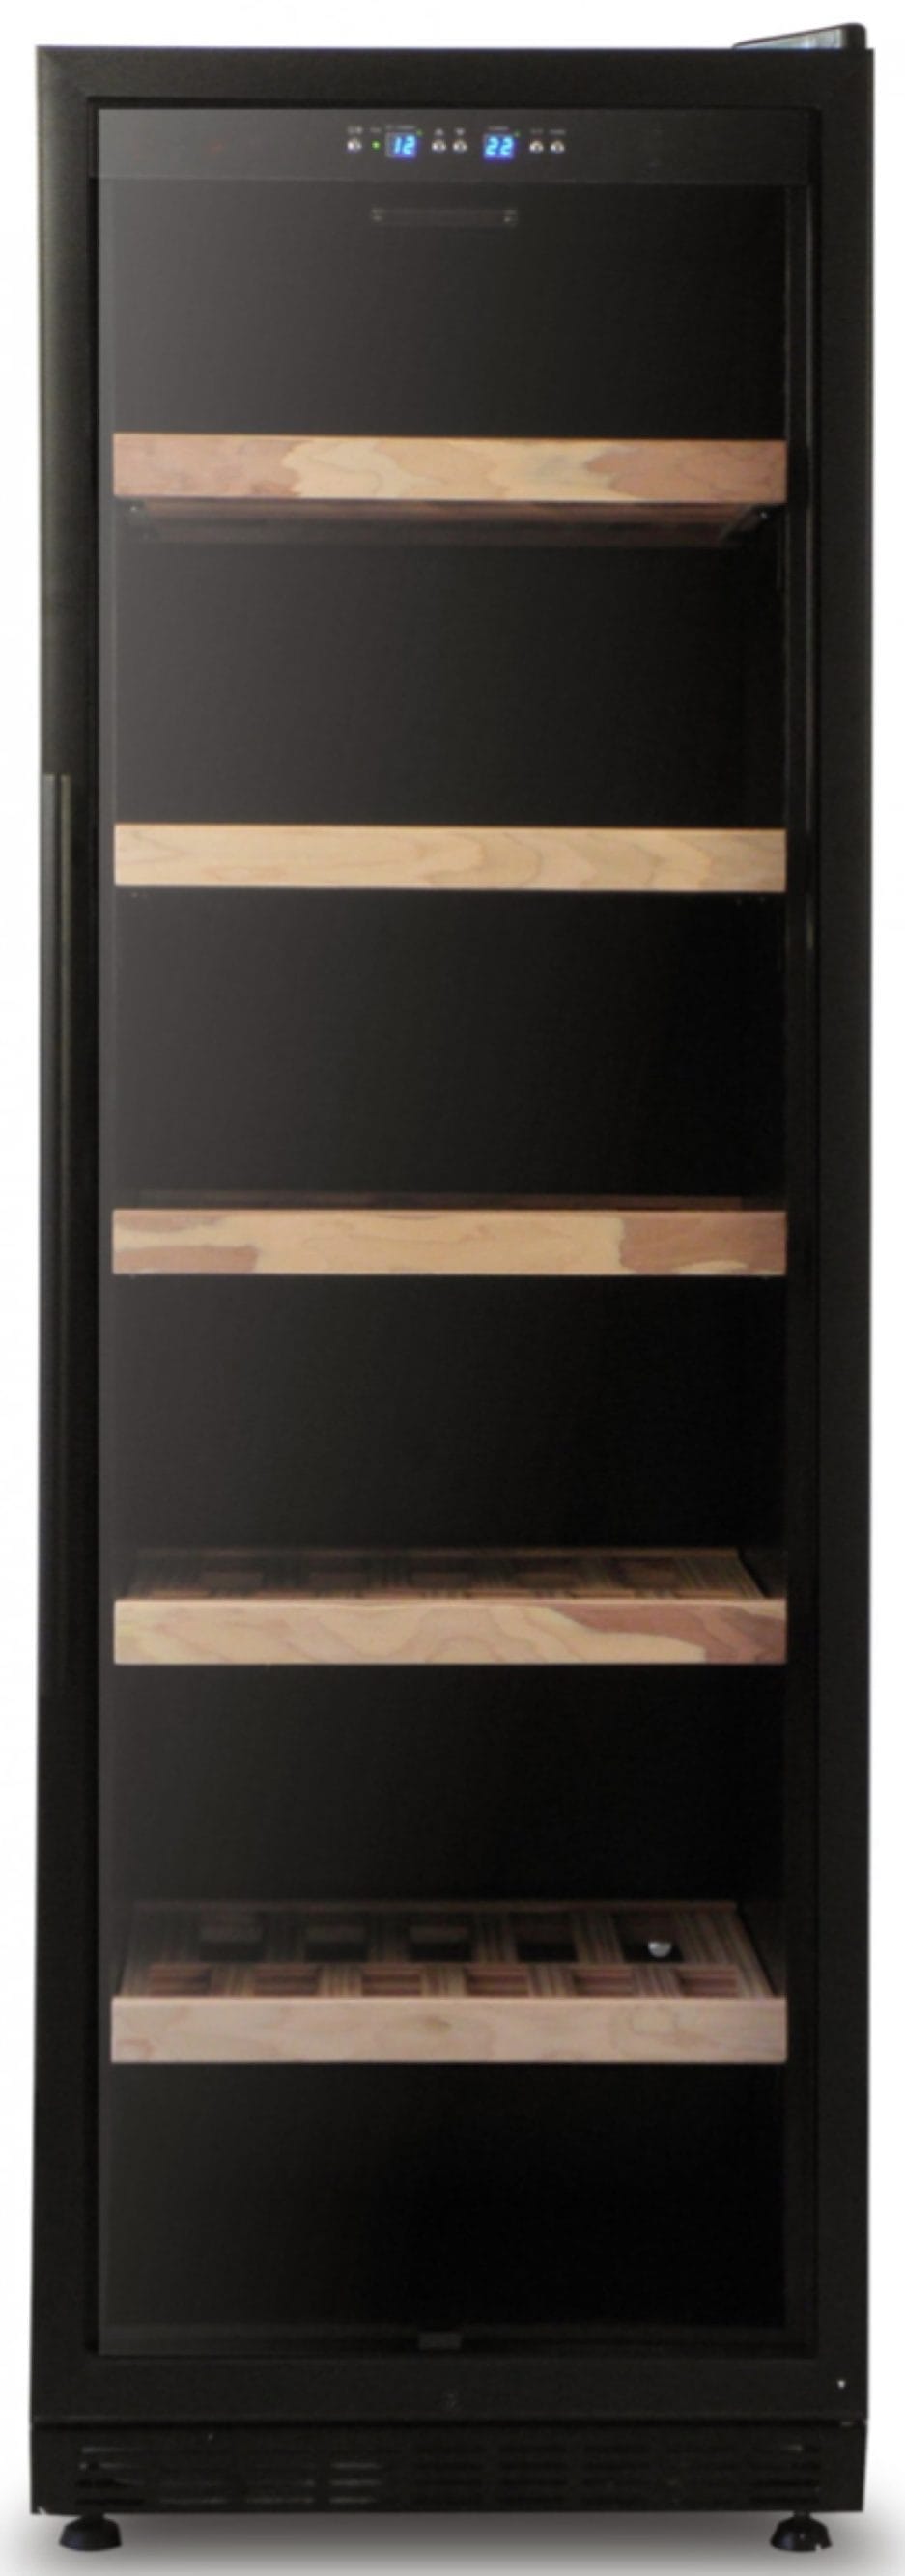 Hoge zwarte Bier klimaatkast met glazen deur en vijf houten planken, met bovenaan een digitaal temperatuurcontrolepaneel.